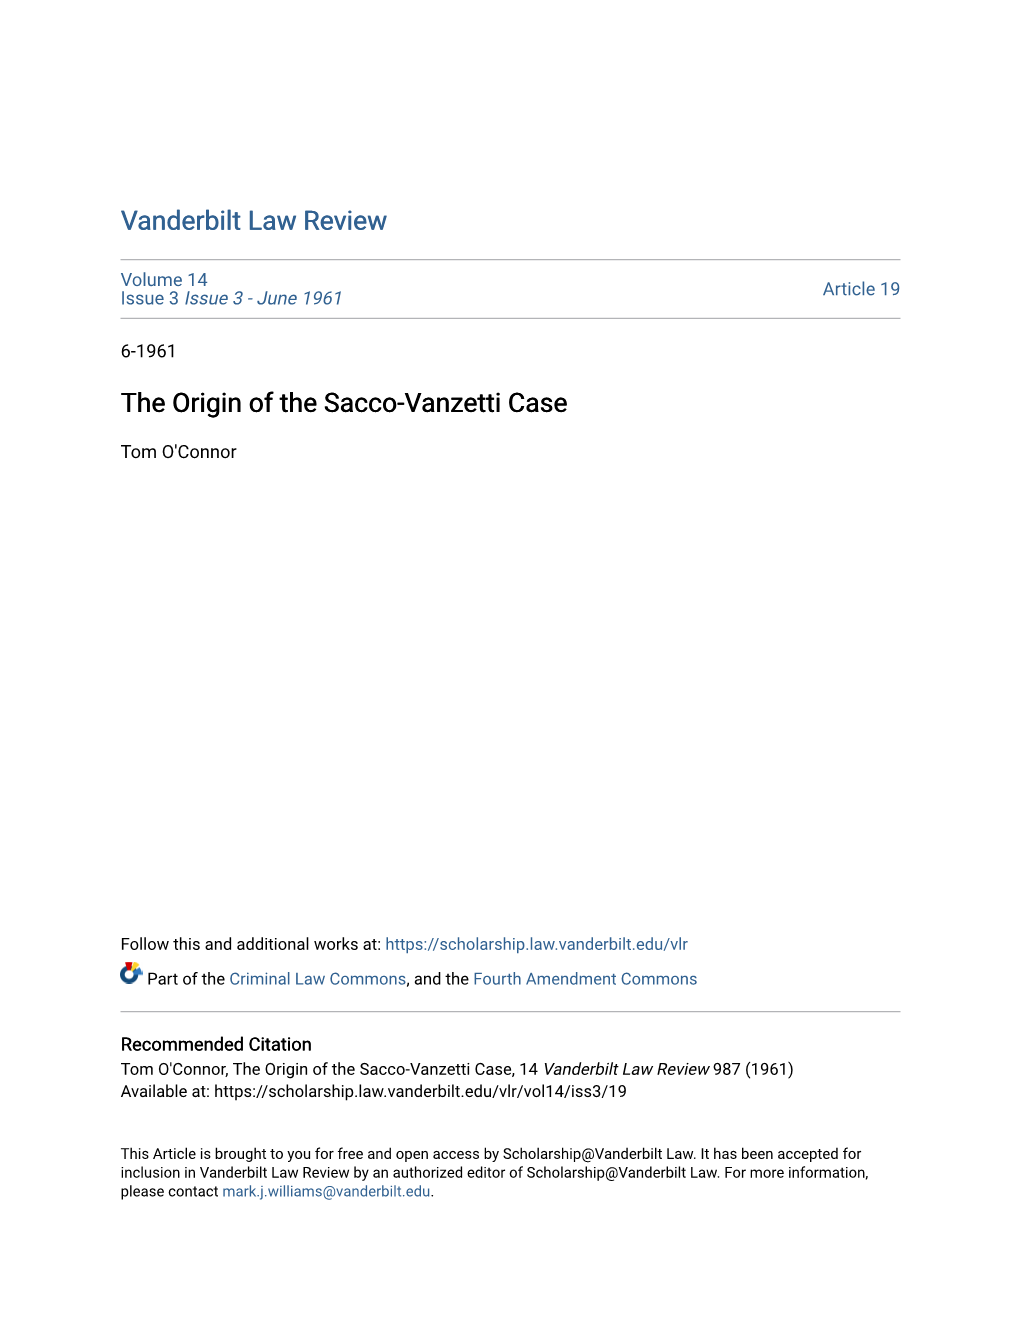 The Origin of the Sacco-Vanzetti Case